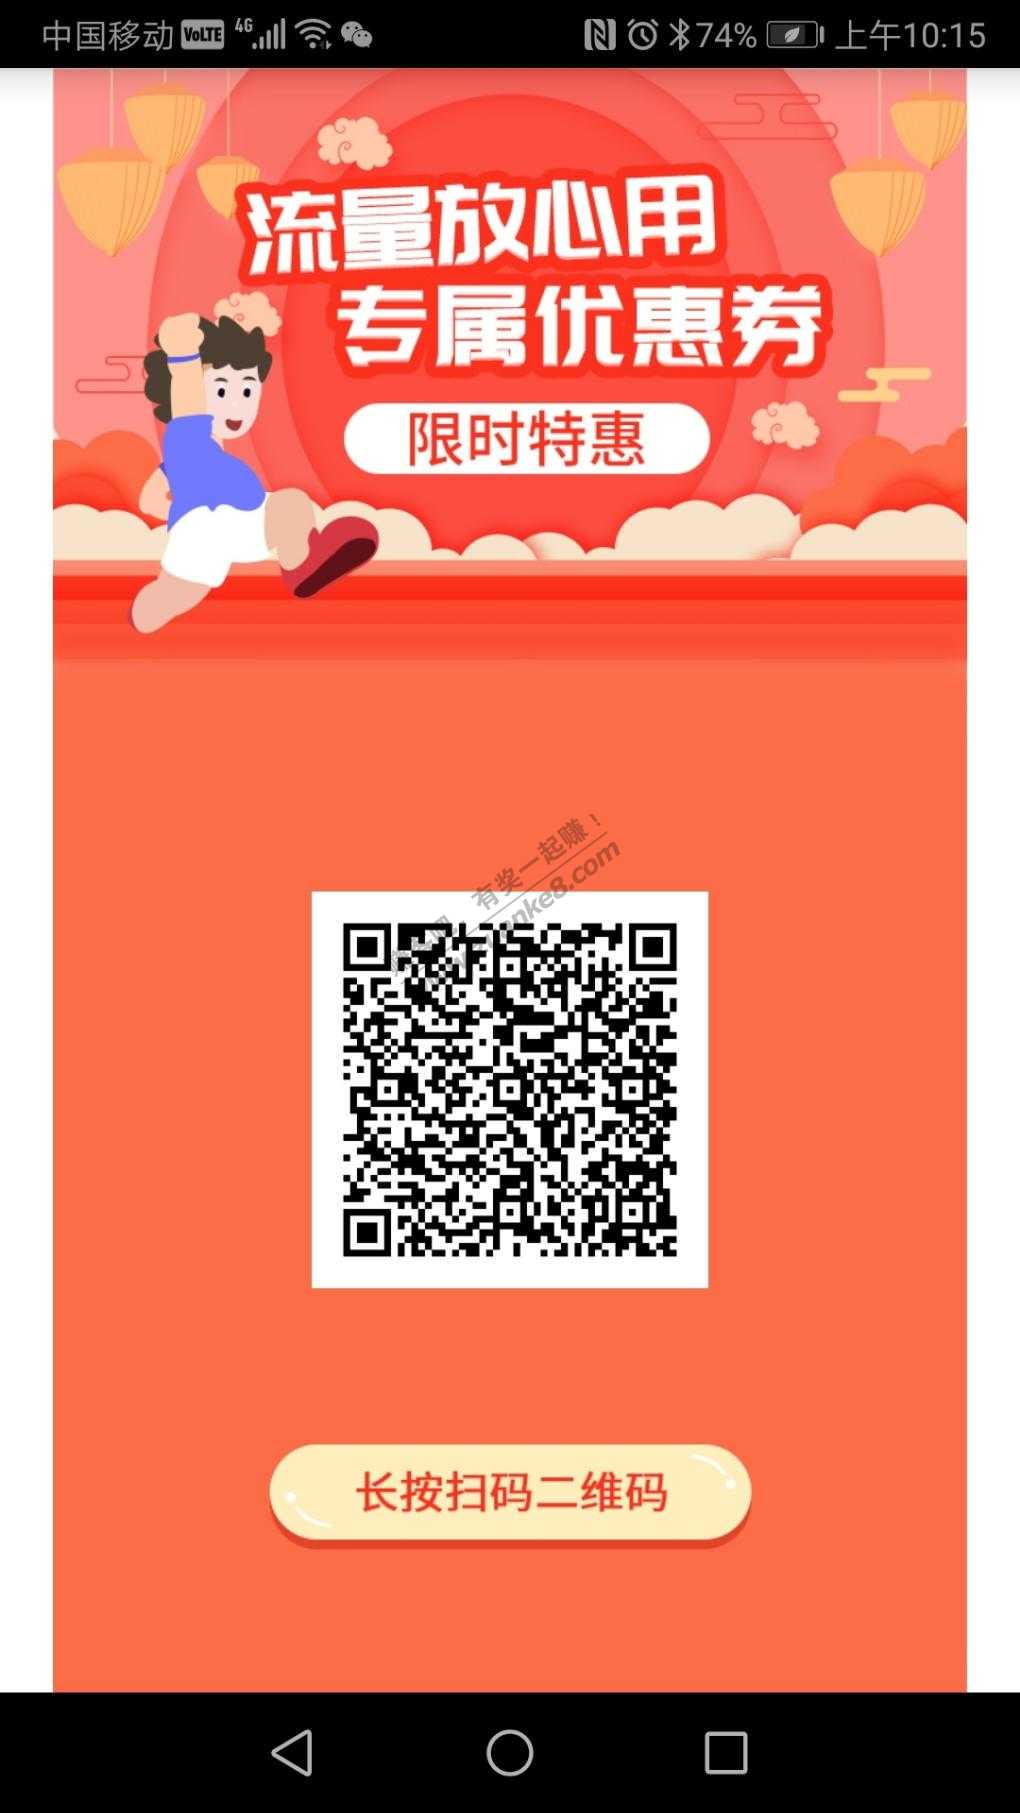 北京移动惠享流量包-20元20G-有效期27个月-惠小助(52huixz.com)